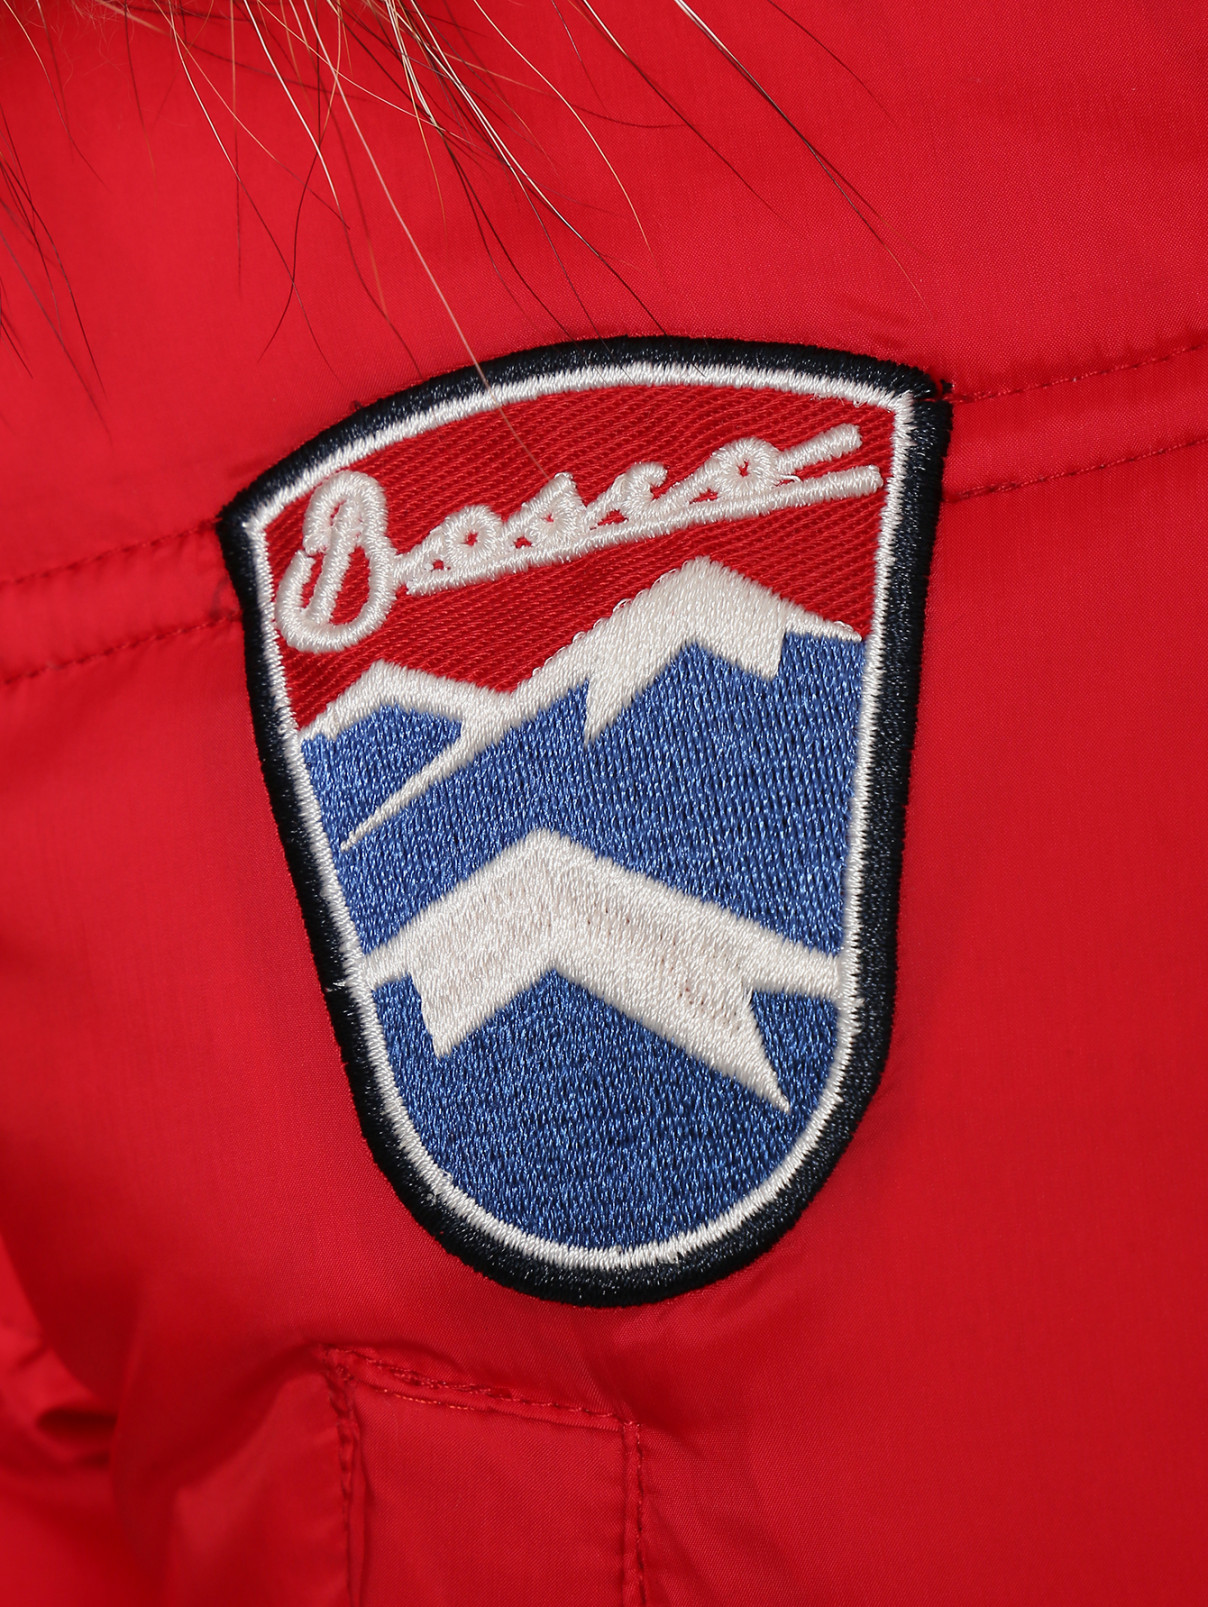 Пуховое пальто с капюшоном на молнии BOSCO  –  Деталь  – Цвет:  Красный